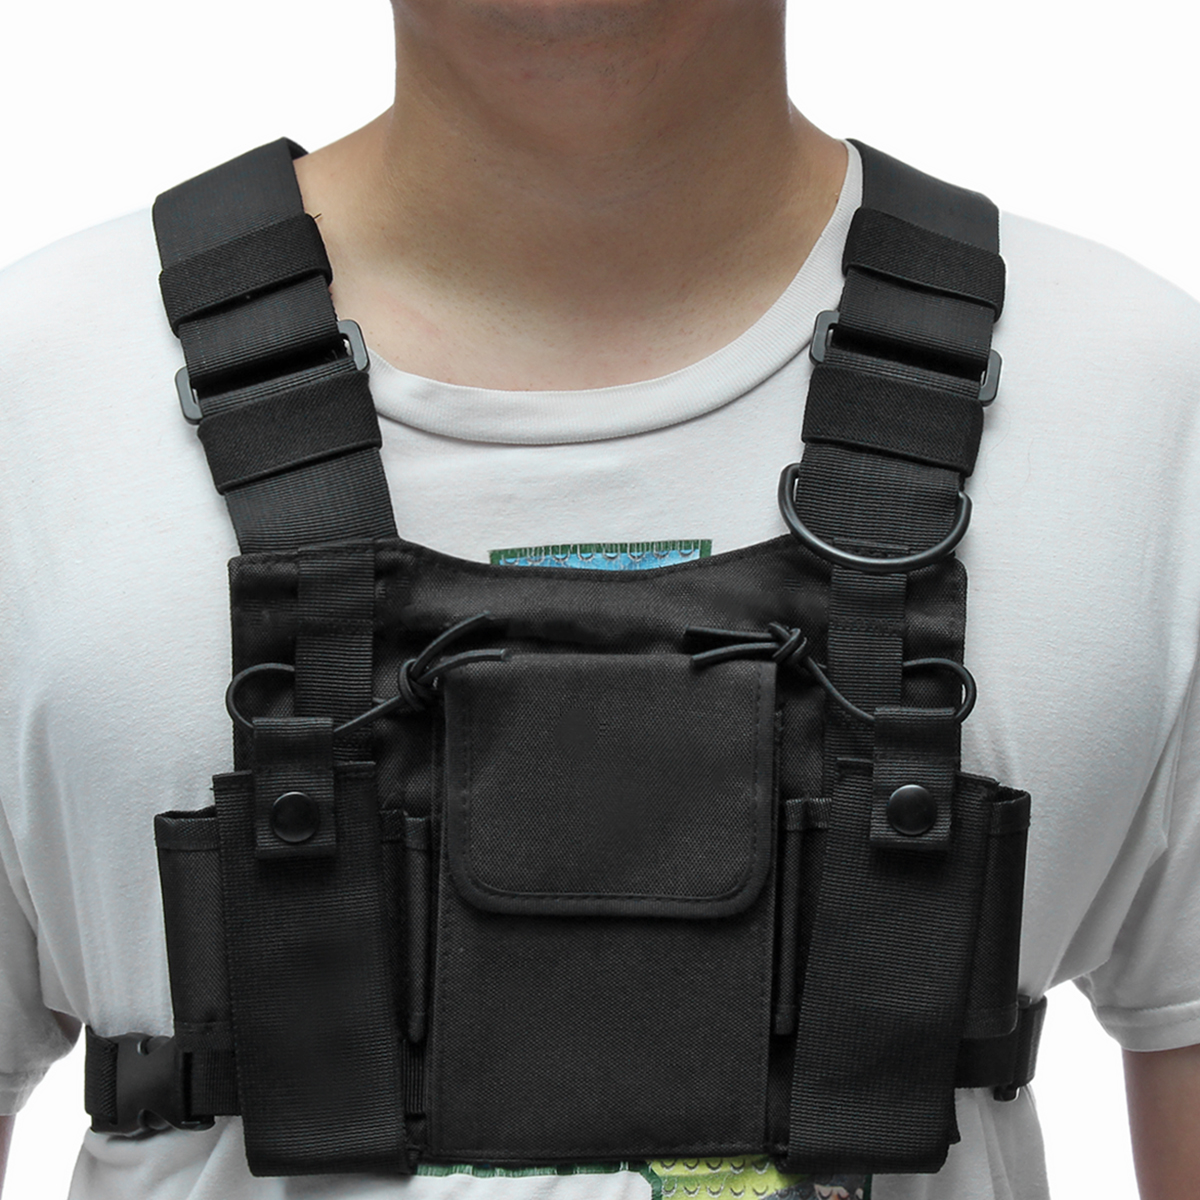 Chest 3 Pocket Harness Nylon Bag Pack Backpack Holster for Radio Walkie ...